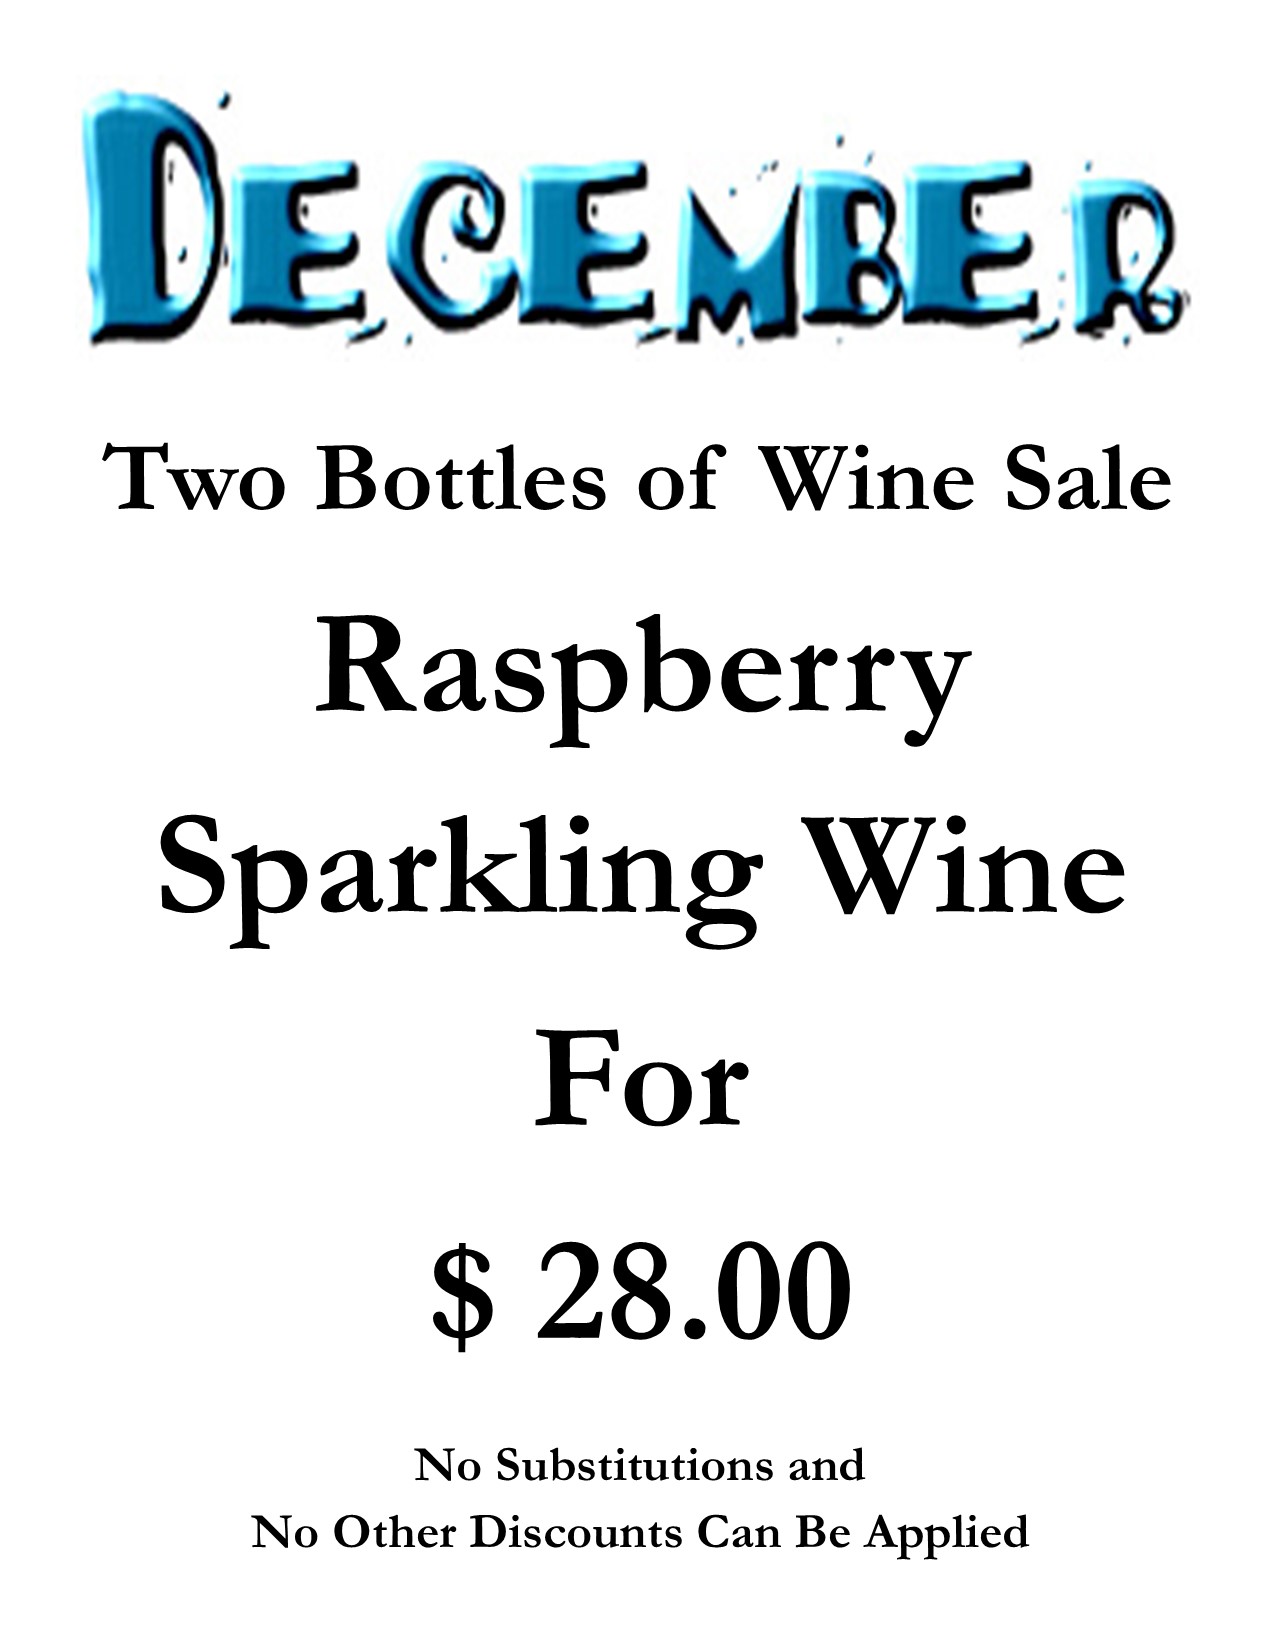 Two Bottle Wine Sale Special (desktop)